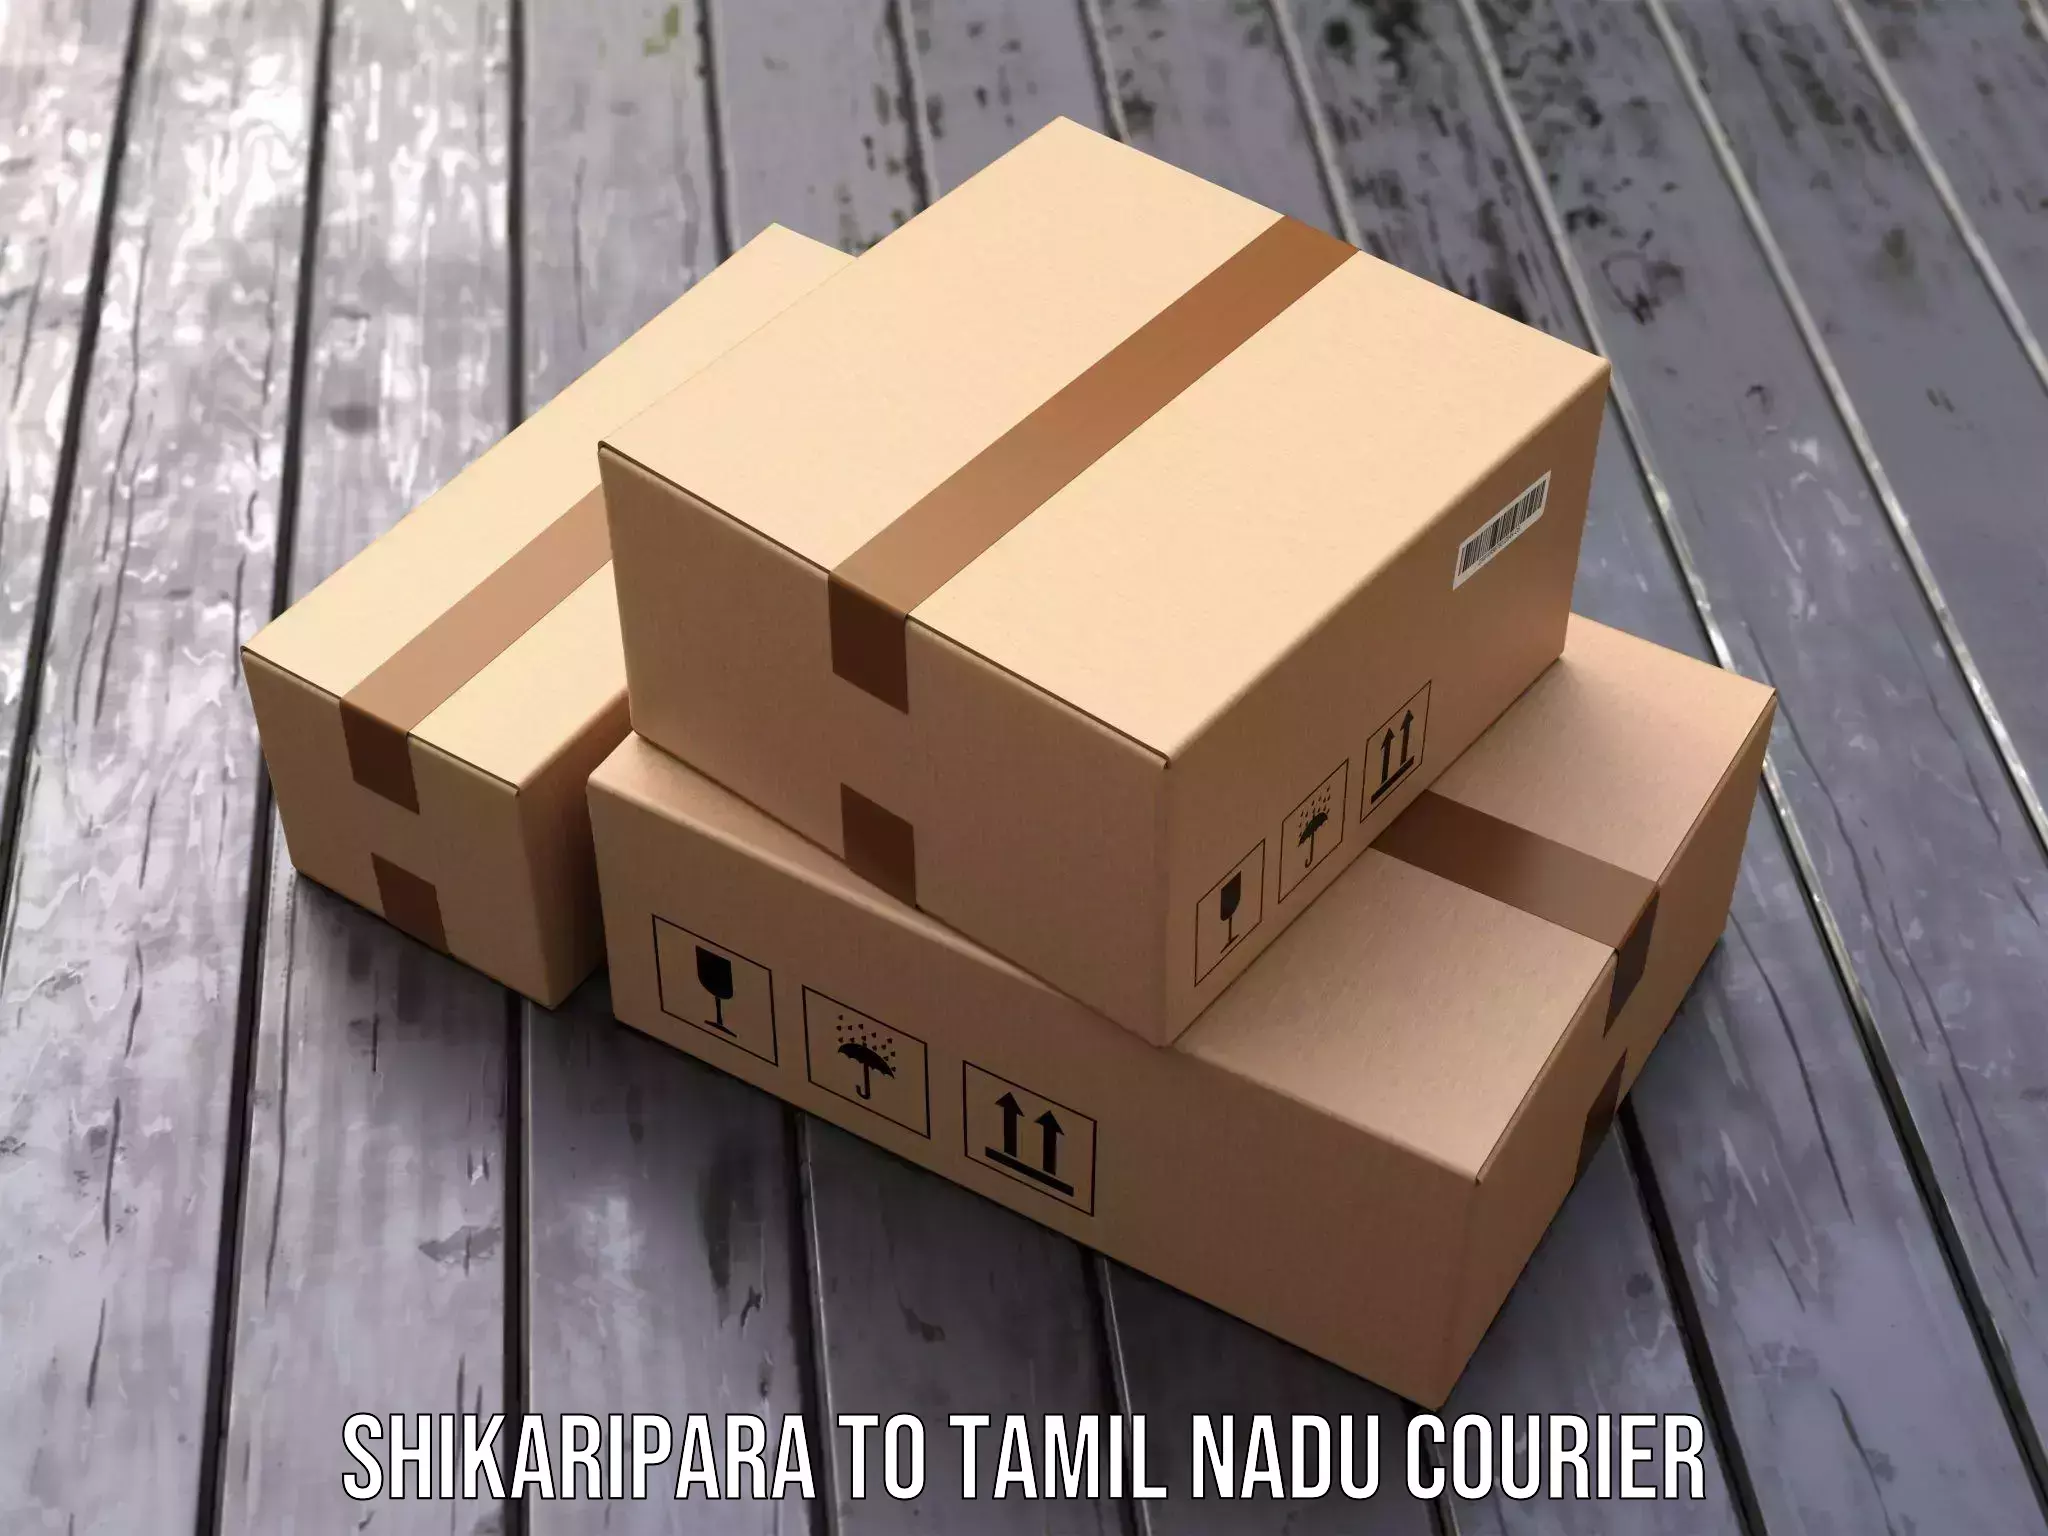 High-priority parcel service Shikaripara to Tiruturaipundi